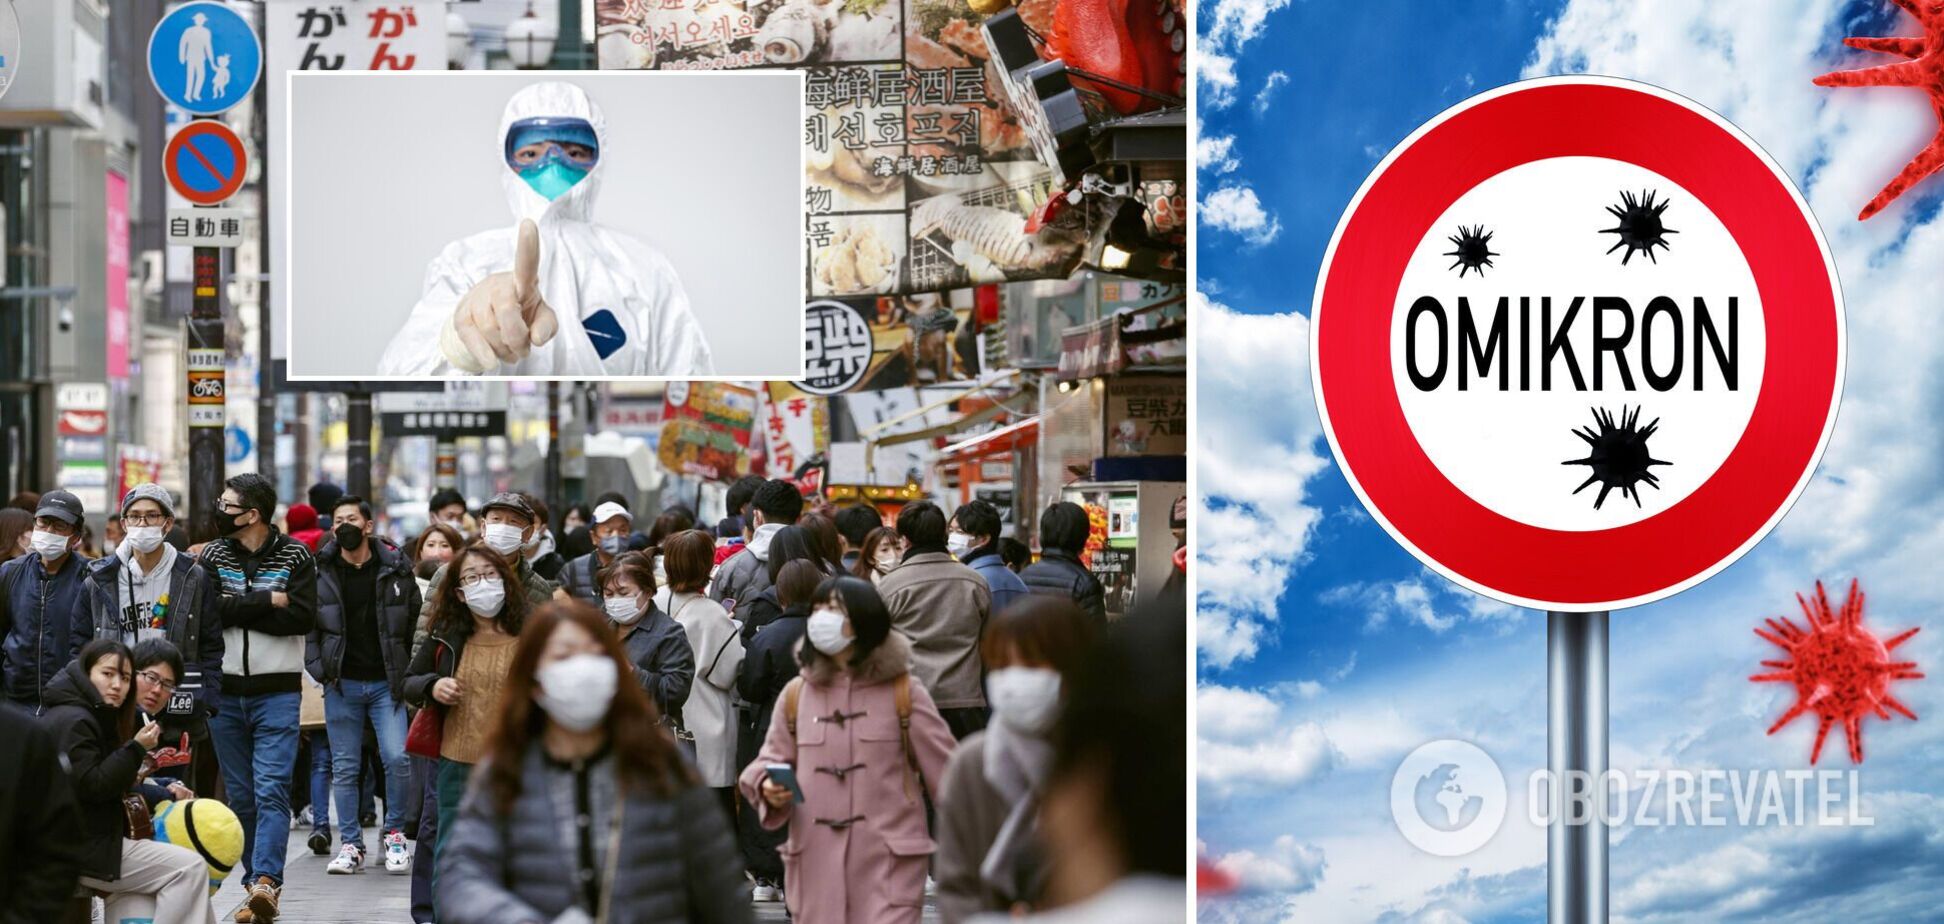 У Японії зафіксовано сплеск захворюваності на COVID-19 через Омікрон: влада готує жорсткі заходи